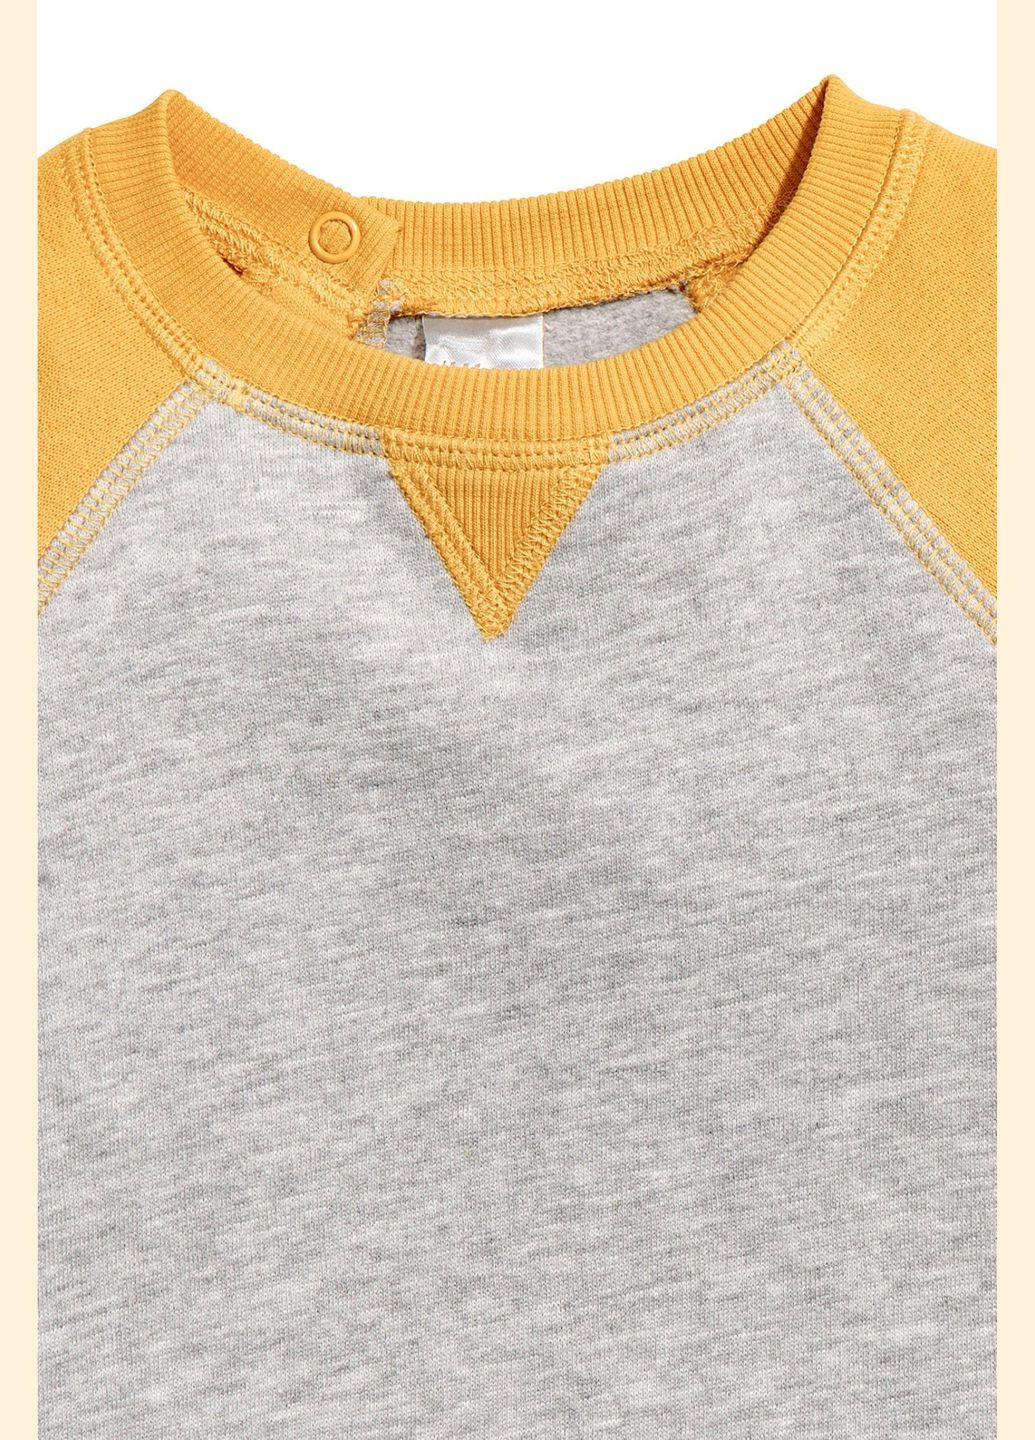 H&M свитшот флис,серый-желтый, серый